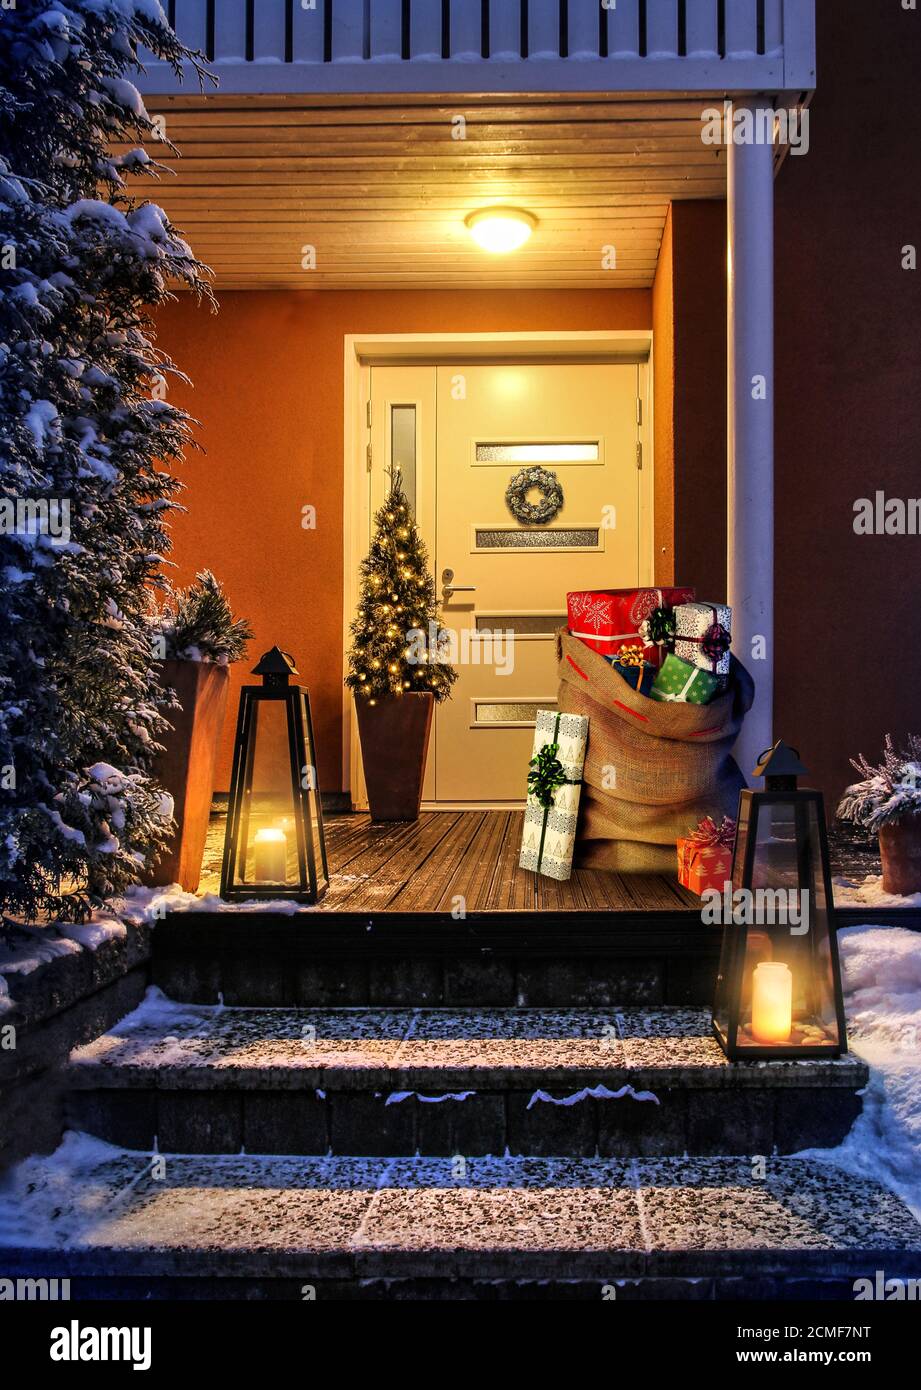 Willkommen Weihnachten - Haus Eingang verschneiten Treppen und Tür mit Dekoration. Santas Geschenksack mit Geschenkschachteln Stockfoto